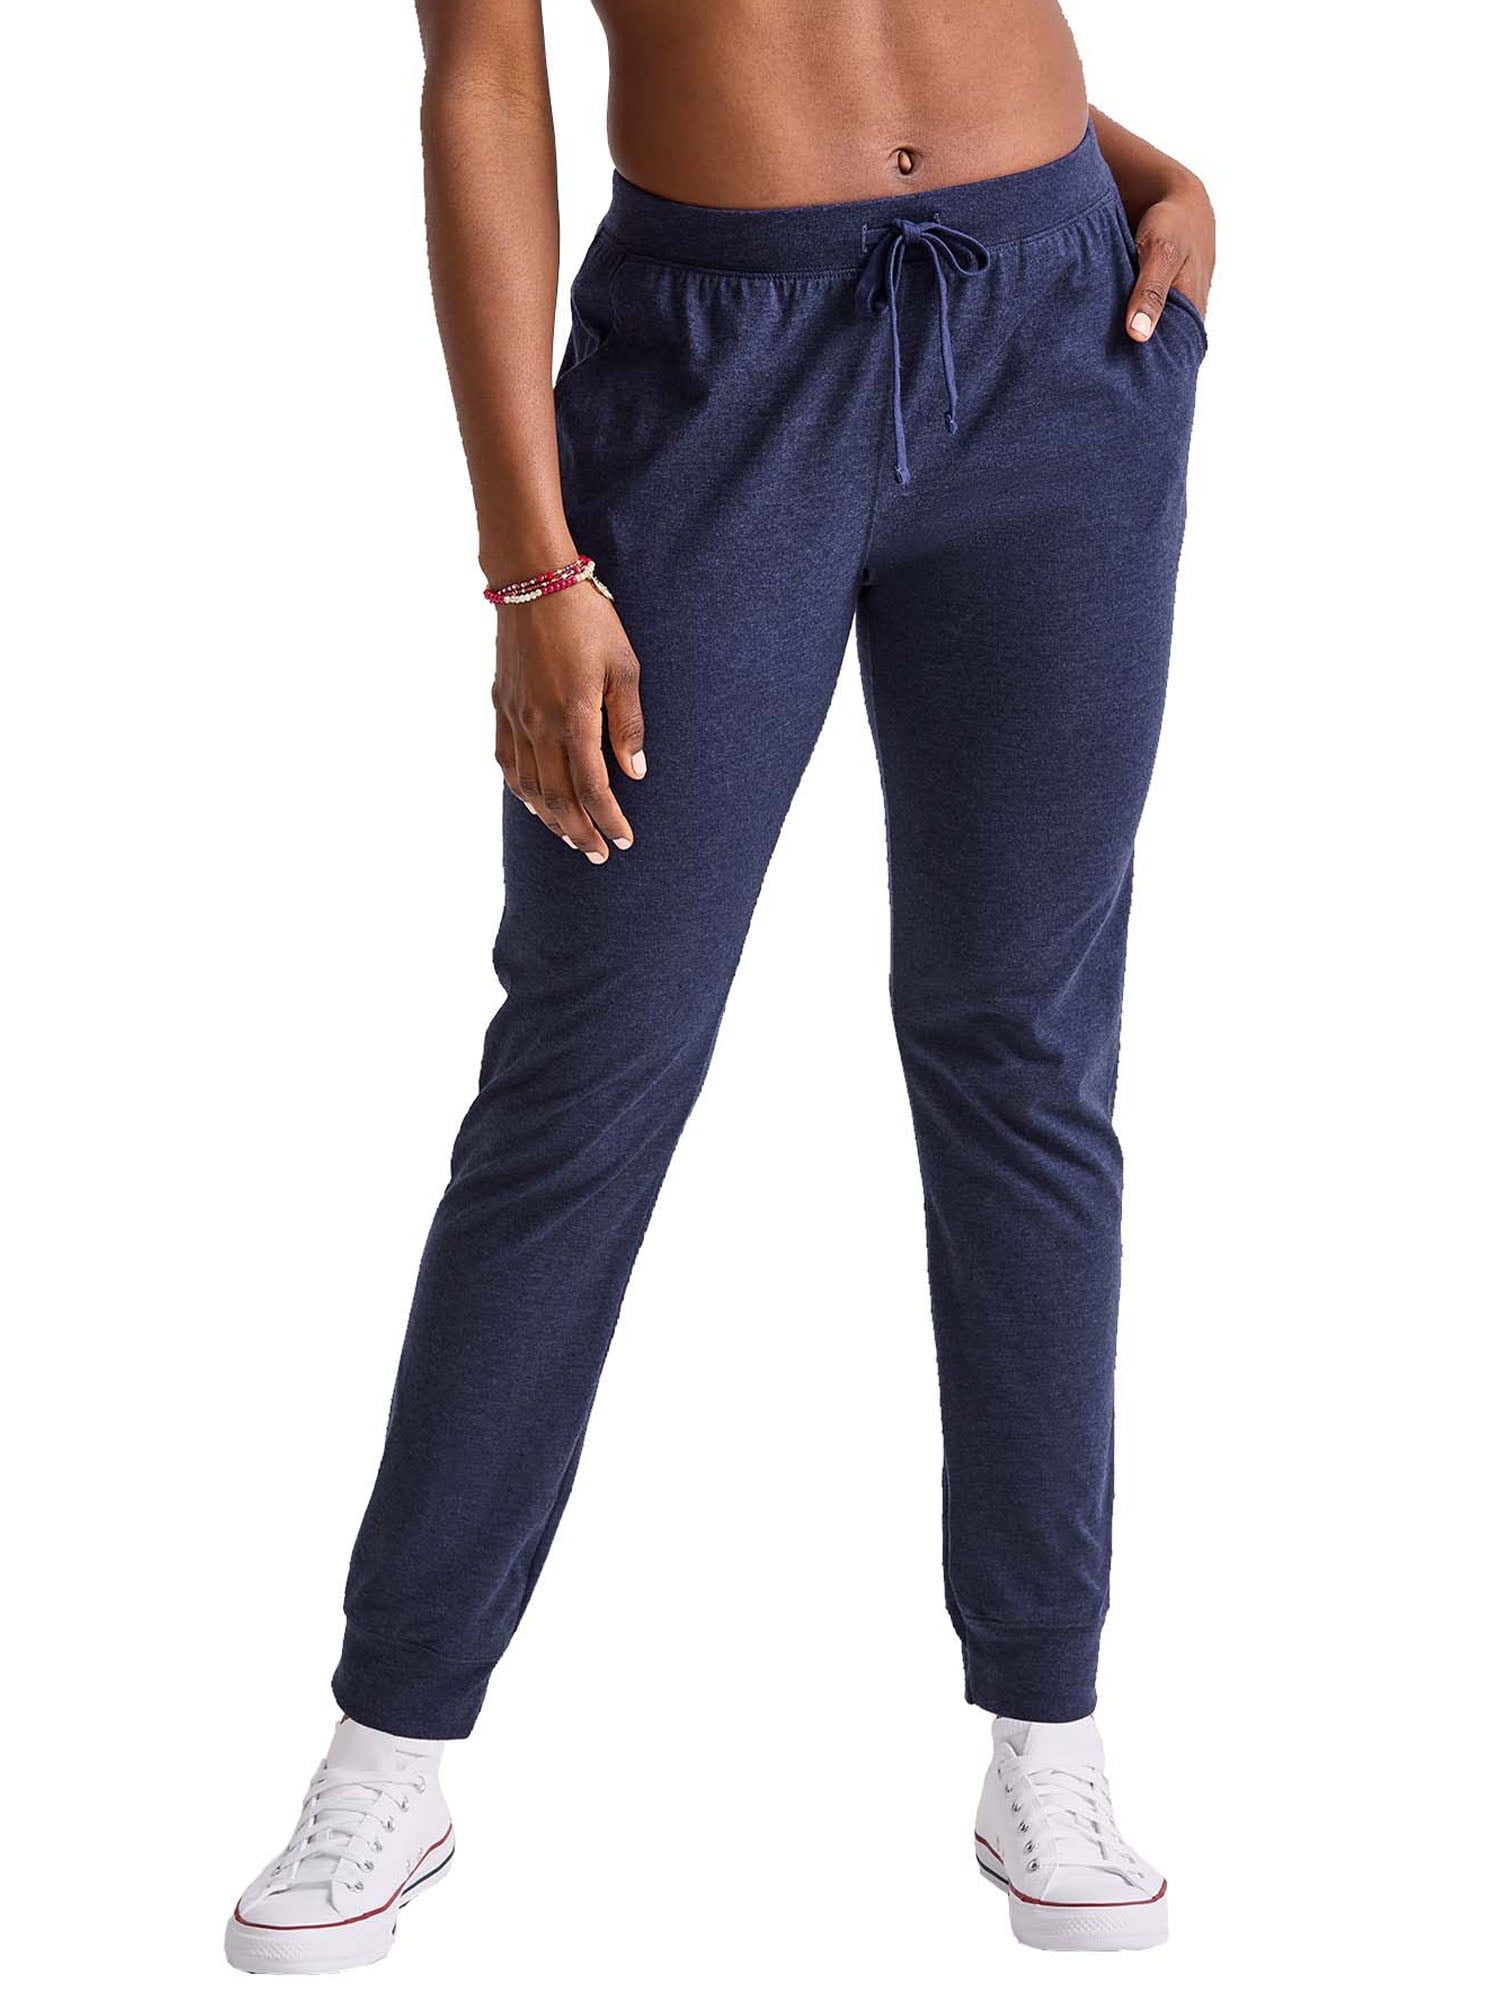 Hanes Originals Women's Tri-Blend Jogger Sweatpants with Pockets